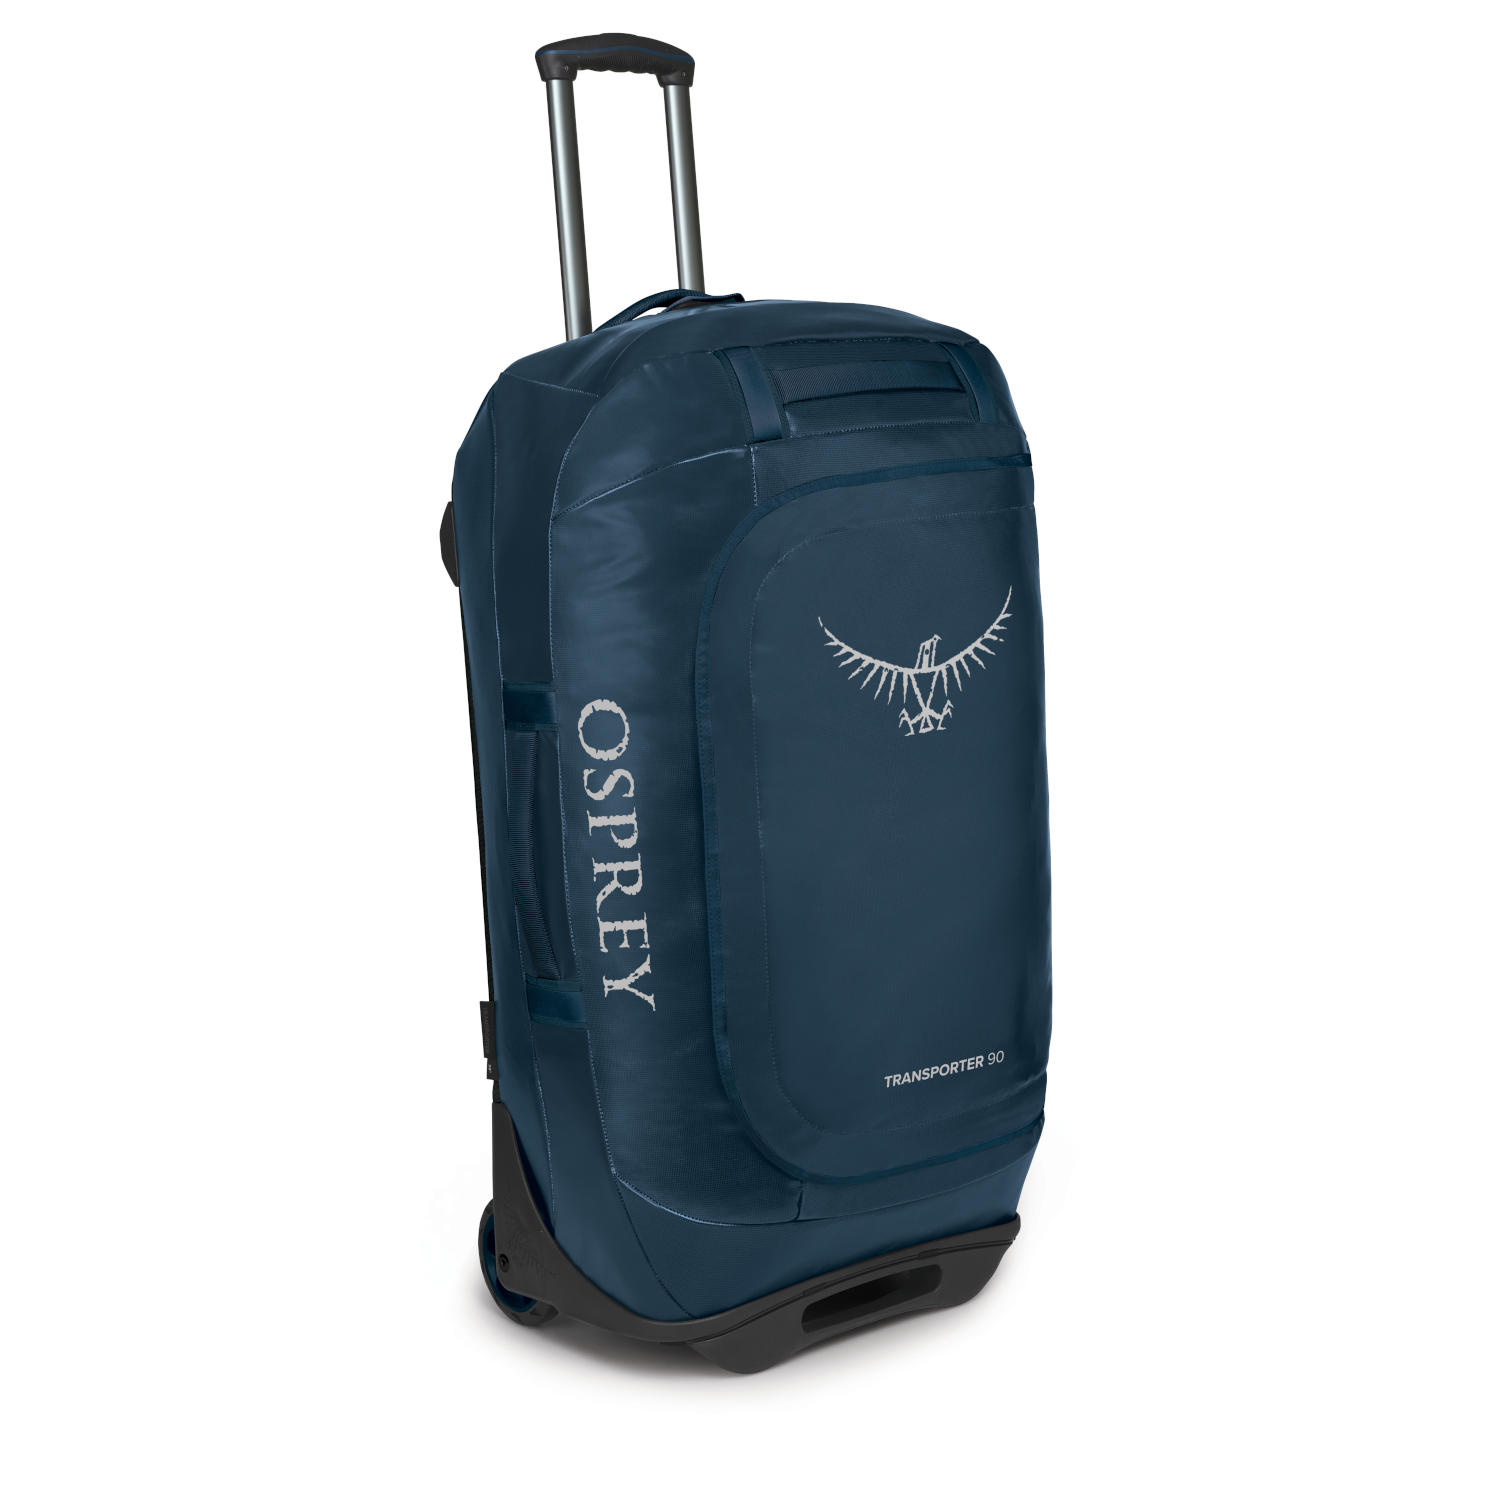 Produktbild von Osprey Rolling Transporter 90 Reisetasche - Venturi Blue